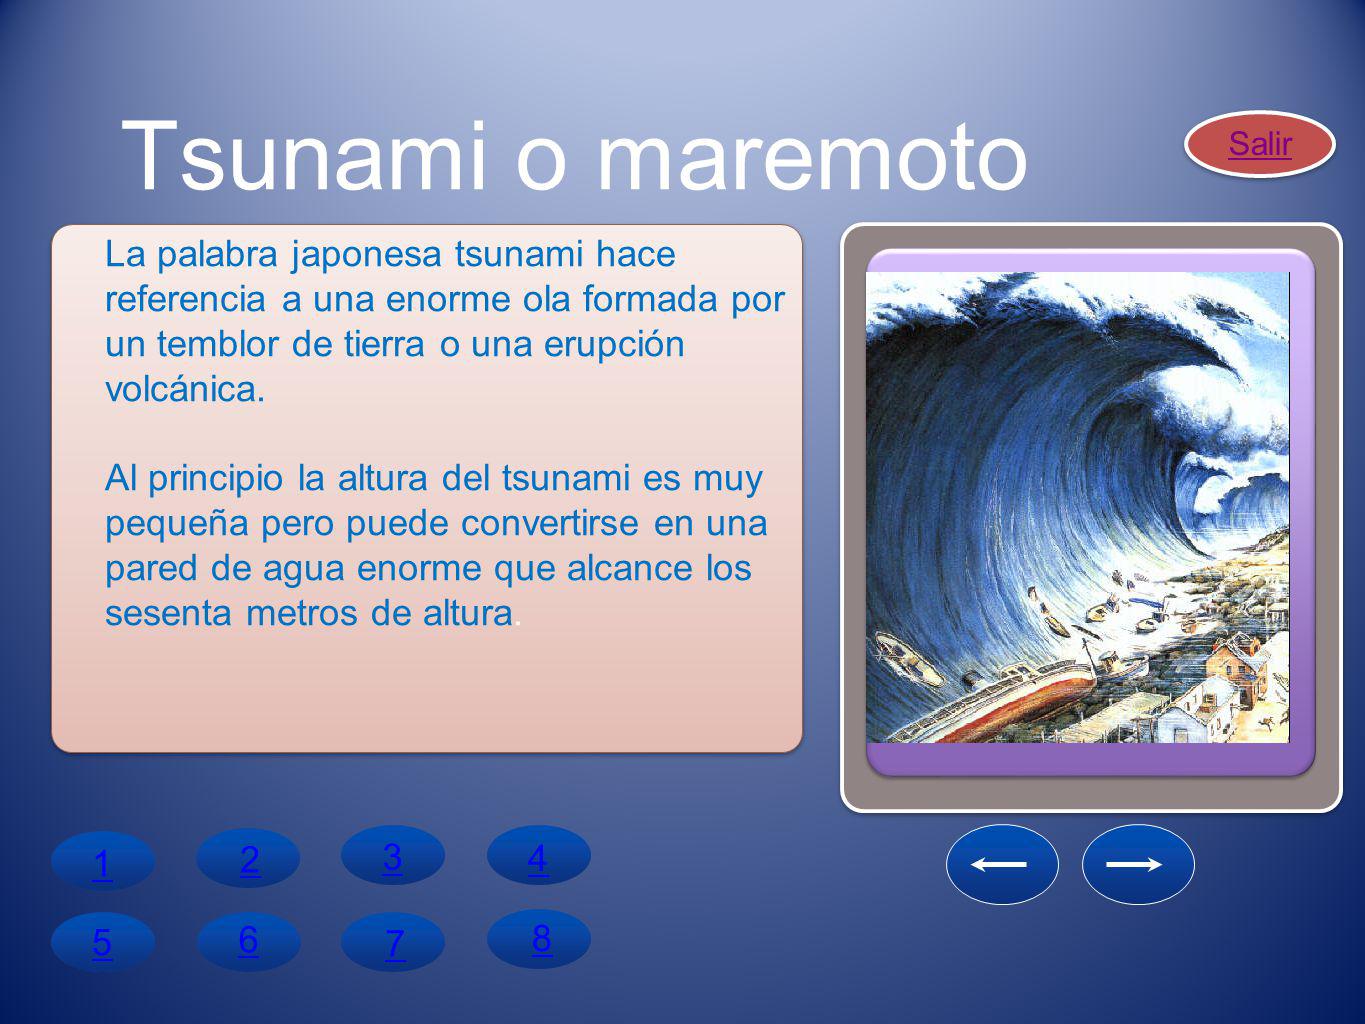 Tsunami o maremoto Salir. La palabra japonesa tsunami hace referencia a una enorme ola formada por un temblor de tierra o una erupción volcánica.